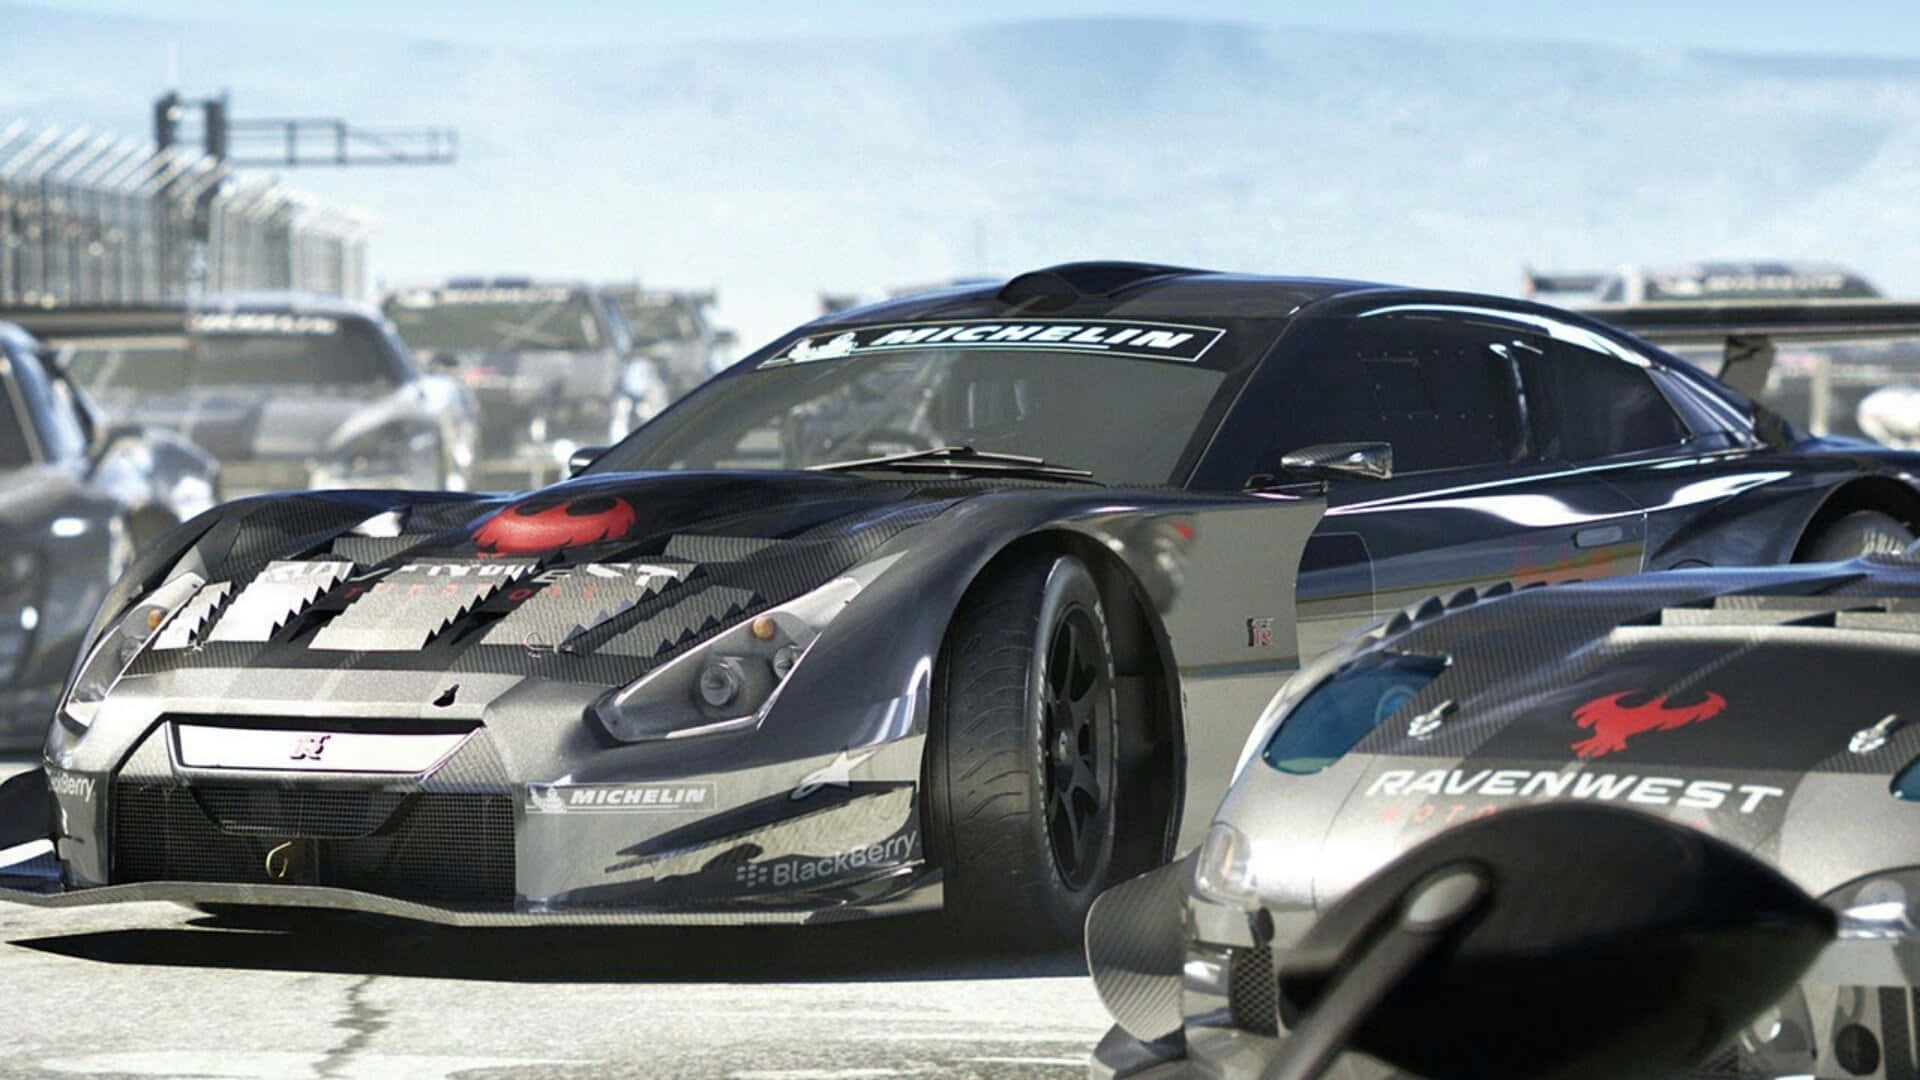 100+] 720p Grid Autosport Backgrounds